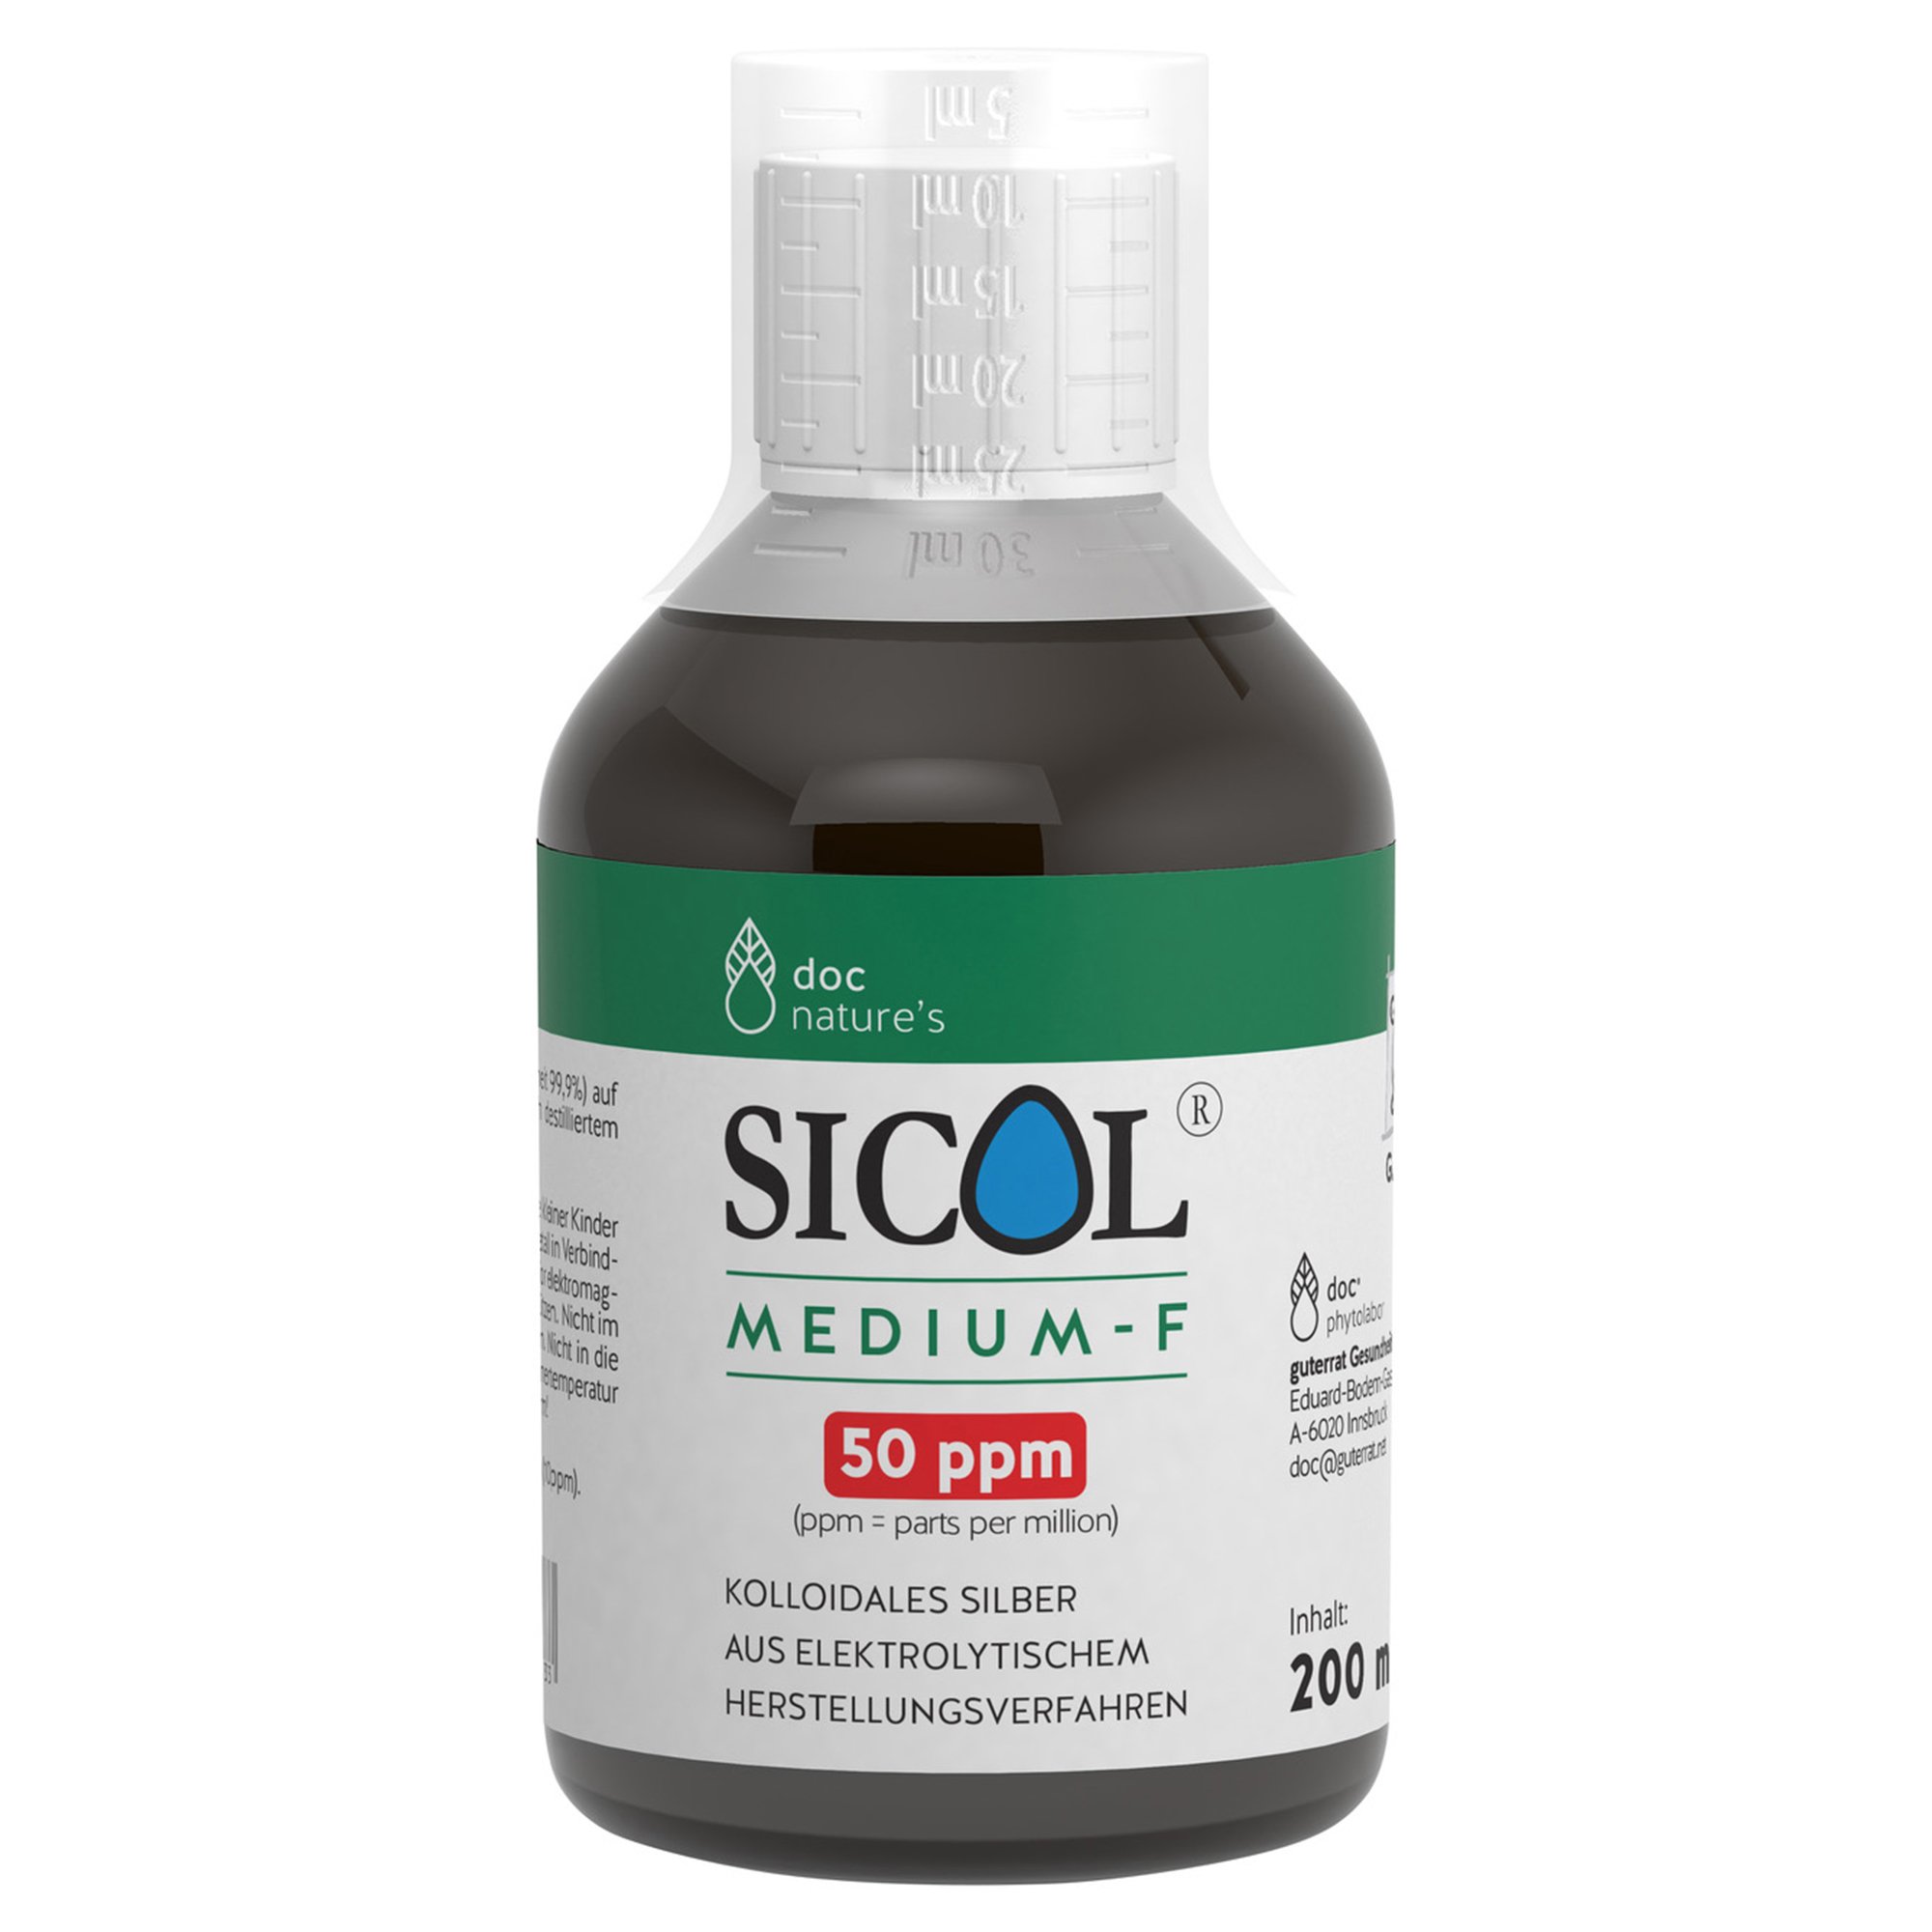 doc nature’s SICOL® MEDIUM-F 50 ppm